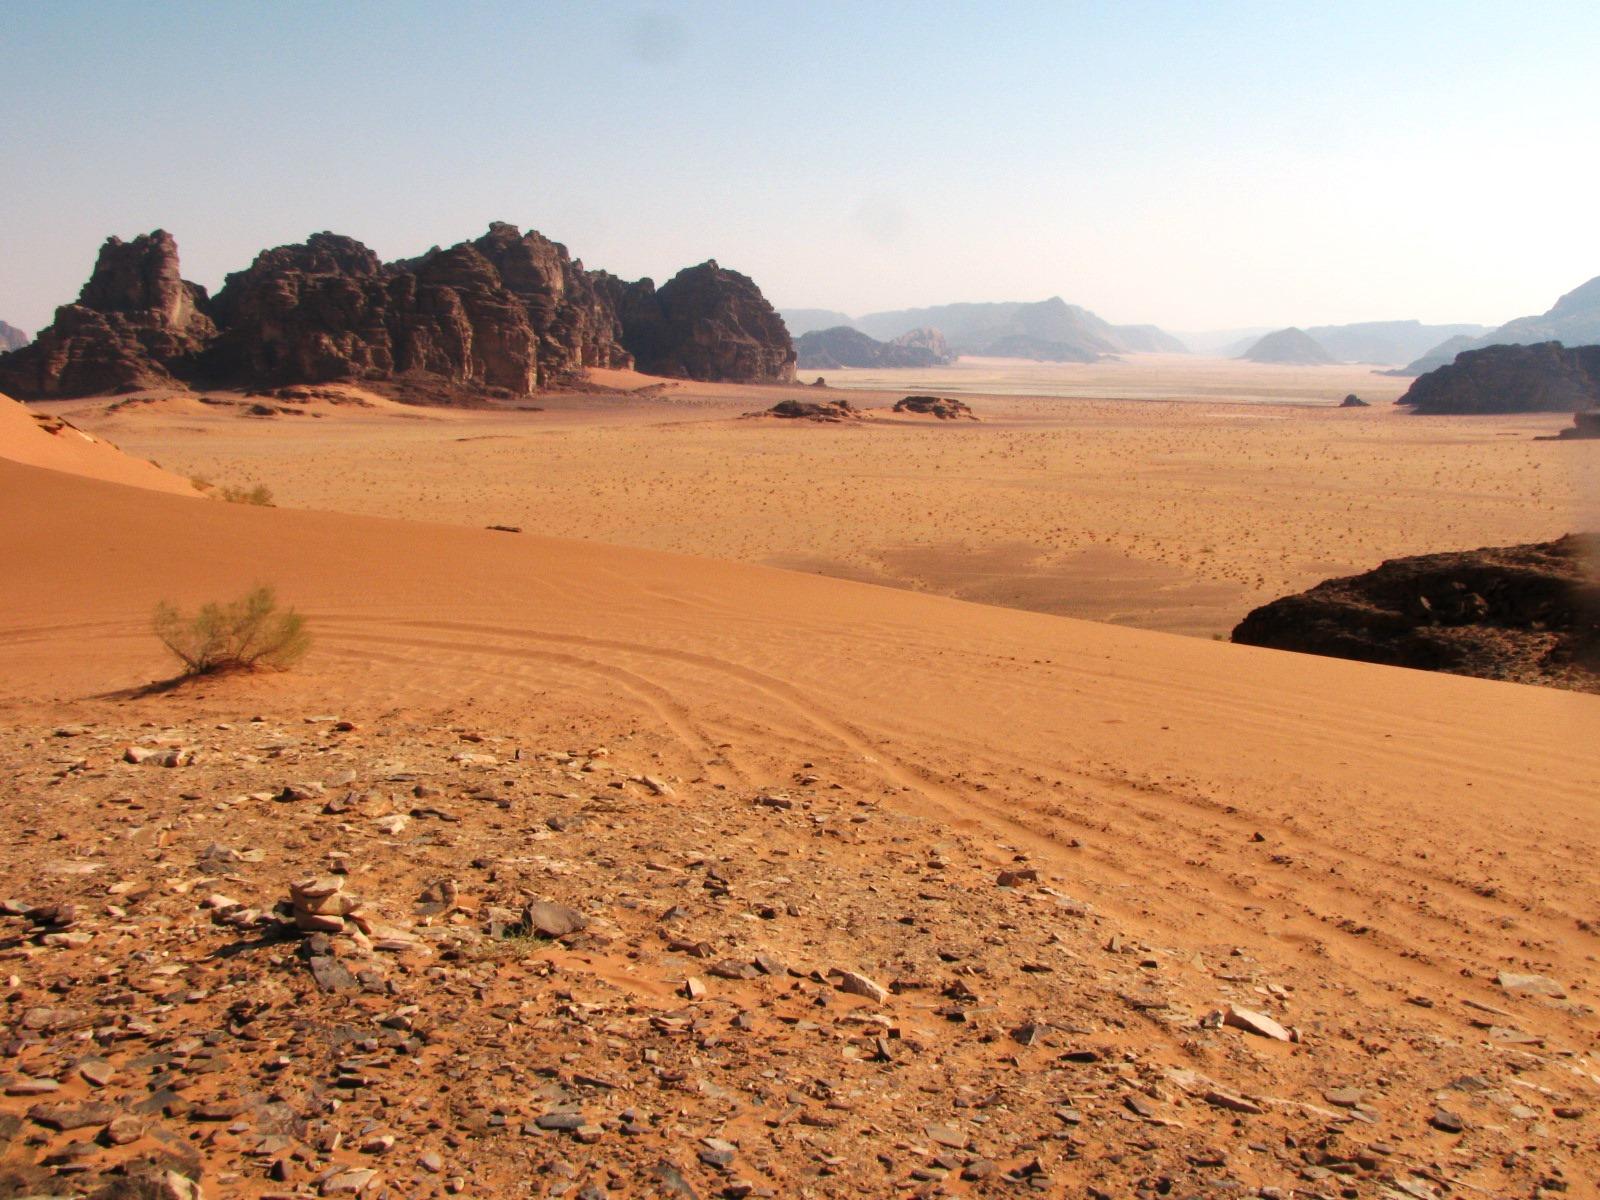 Hima Mesopotamia: Travels in Jordan 2013: Wadi Rum and Petra